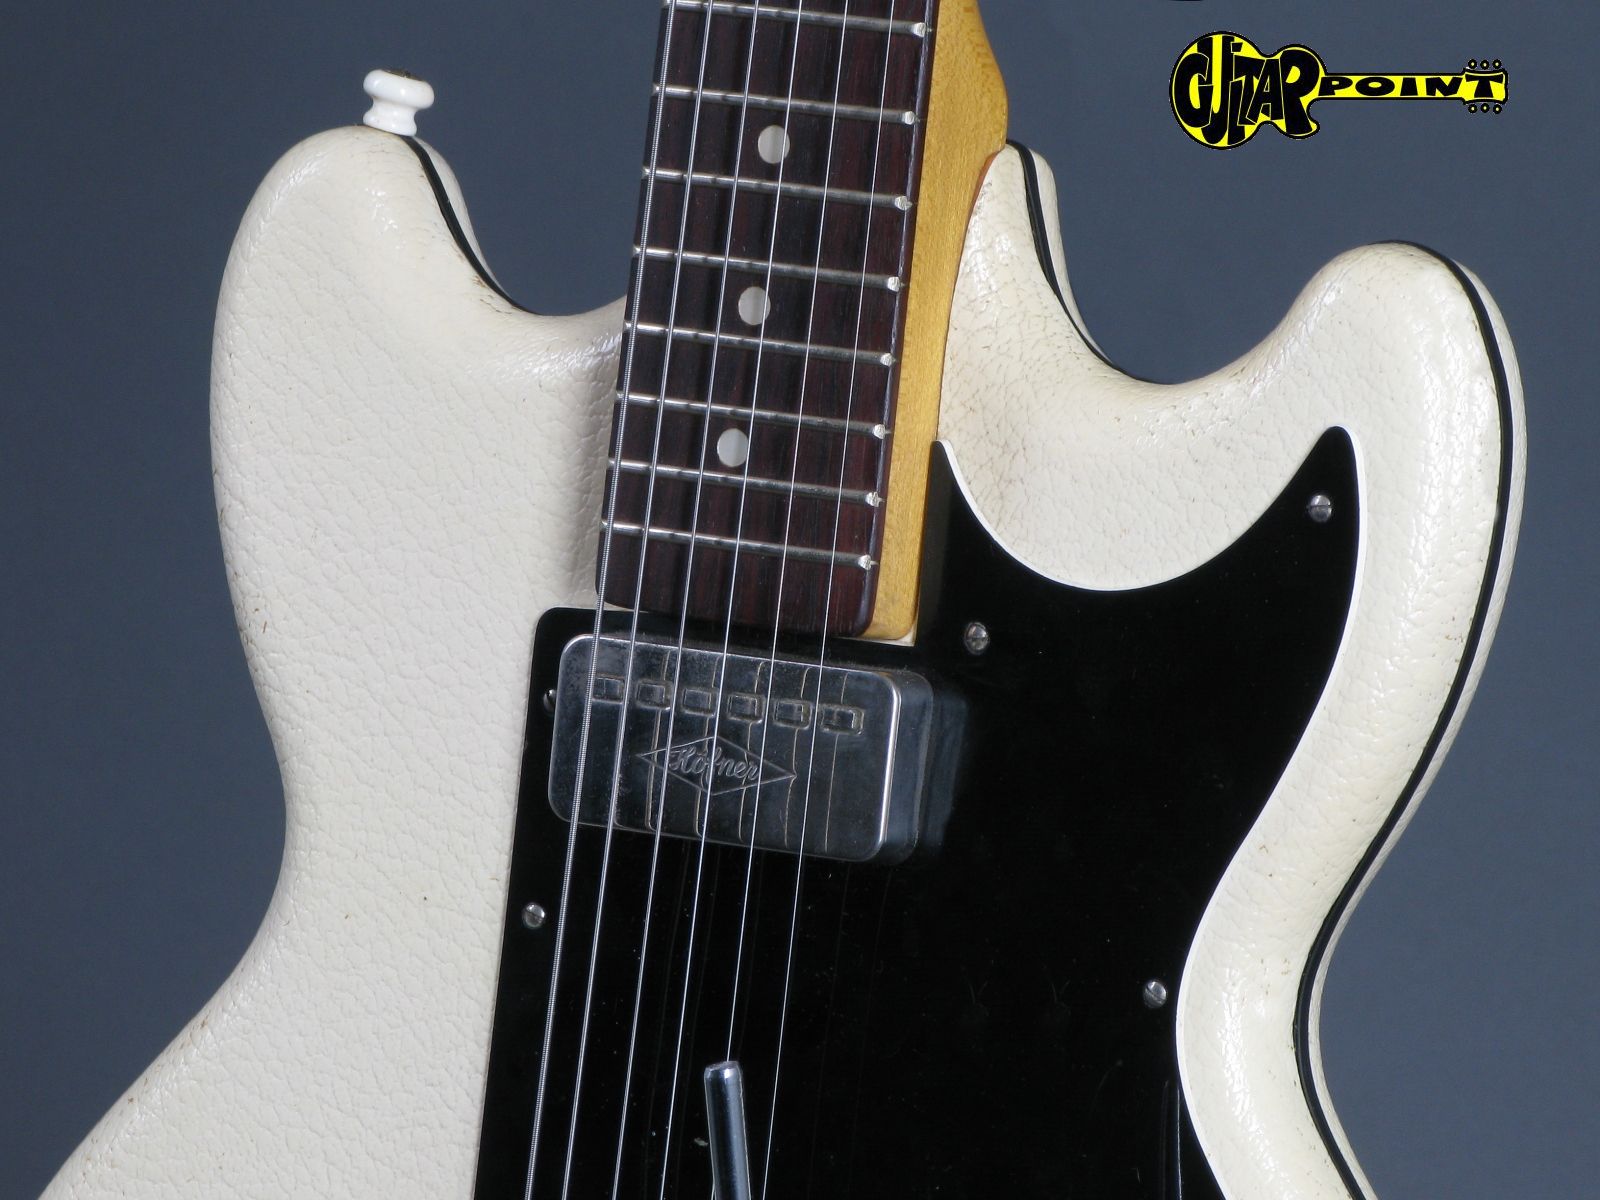 Höfner / Hofner 164 (i) 1964 White Vinyl Guitar For Sale GuitarPoint
